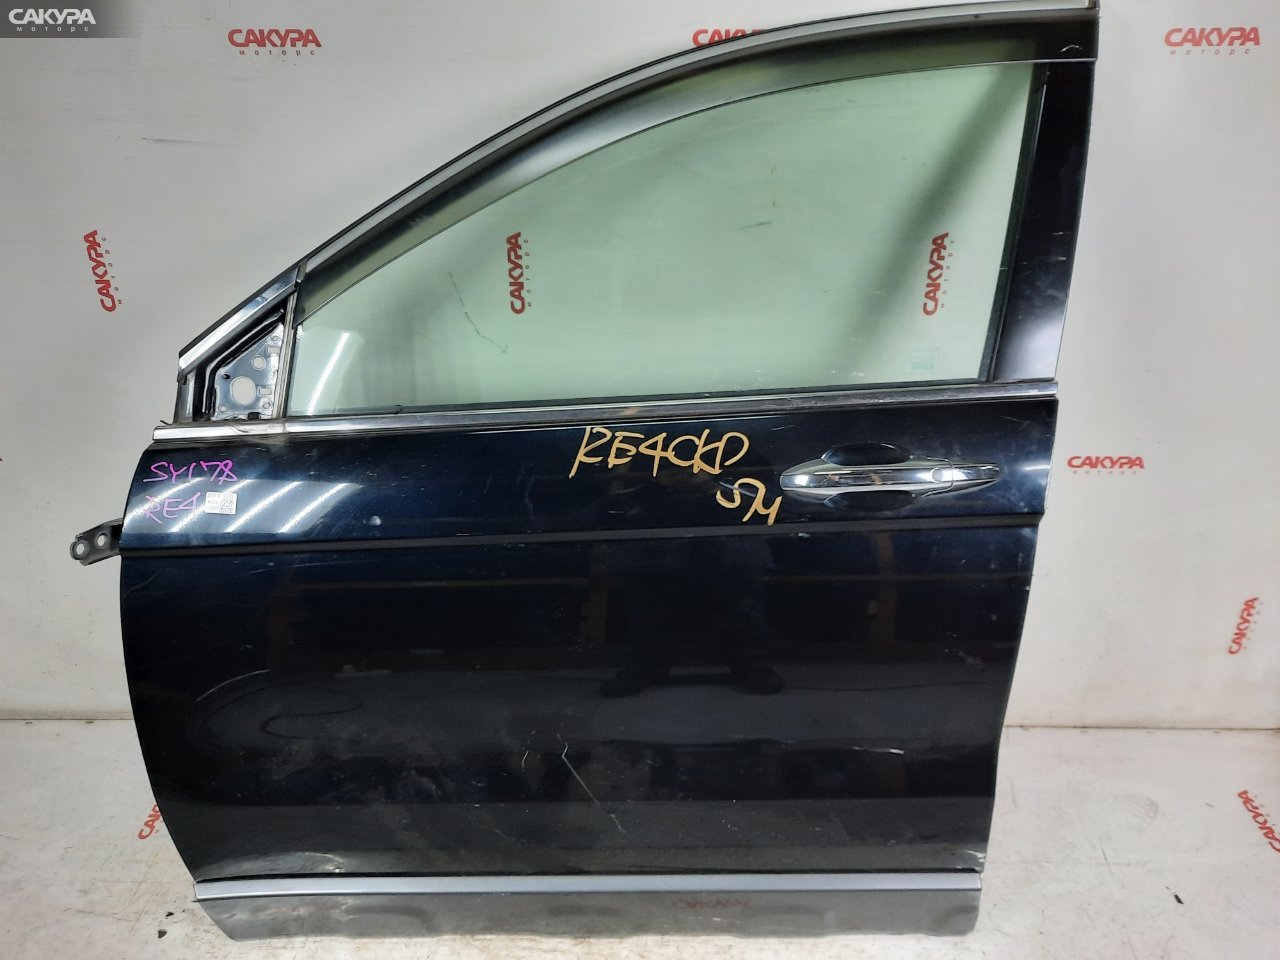 Дверь боковая передняя левая Honda CR-V RE4 K24A: купить в Сакура Красноярск.